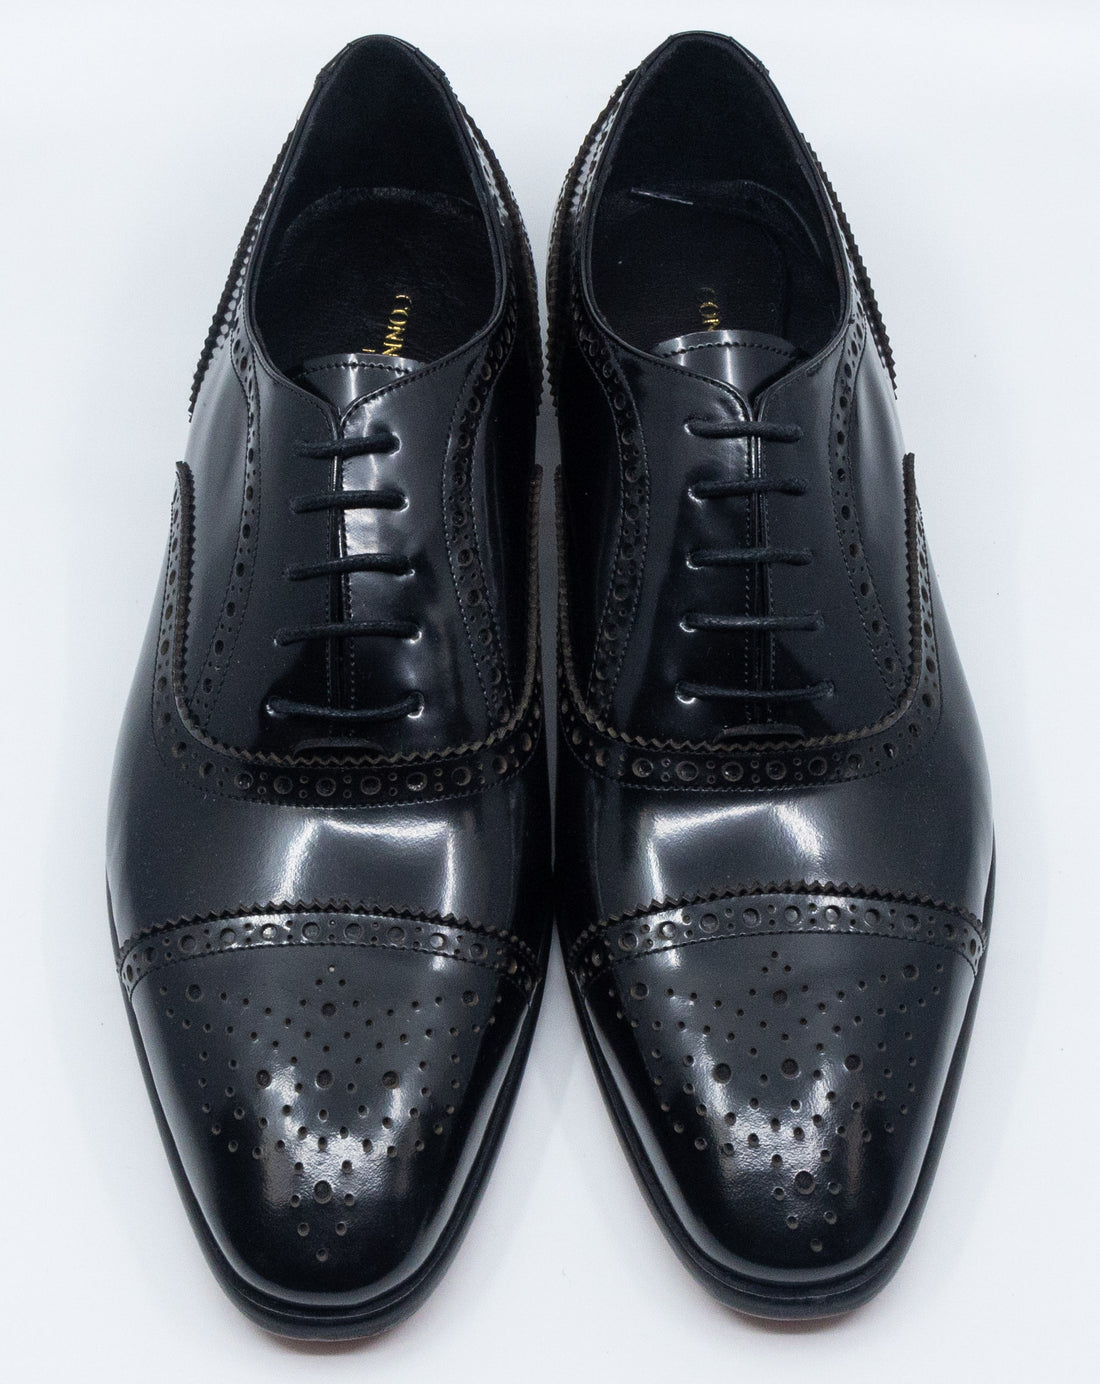 Connaisseur - Black patent leather cup toe Oxford dress shoes